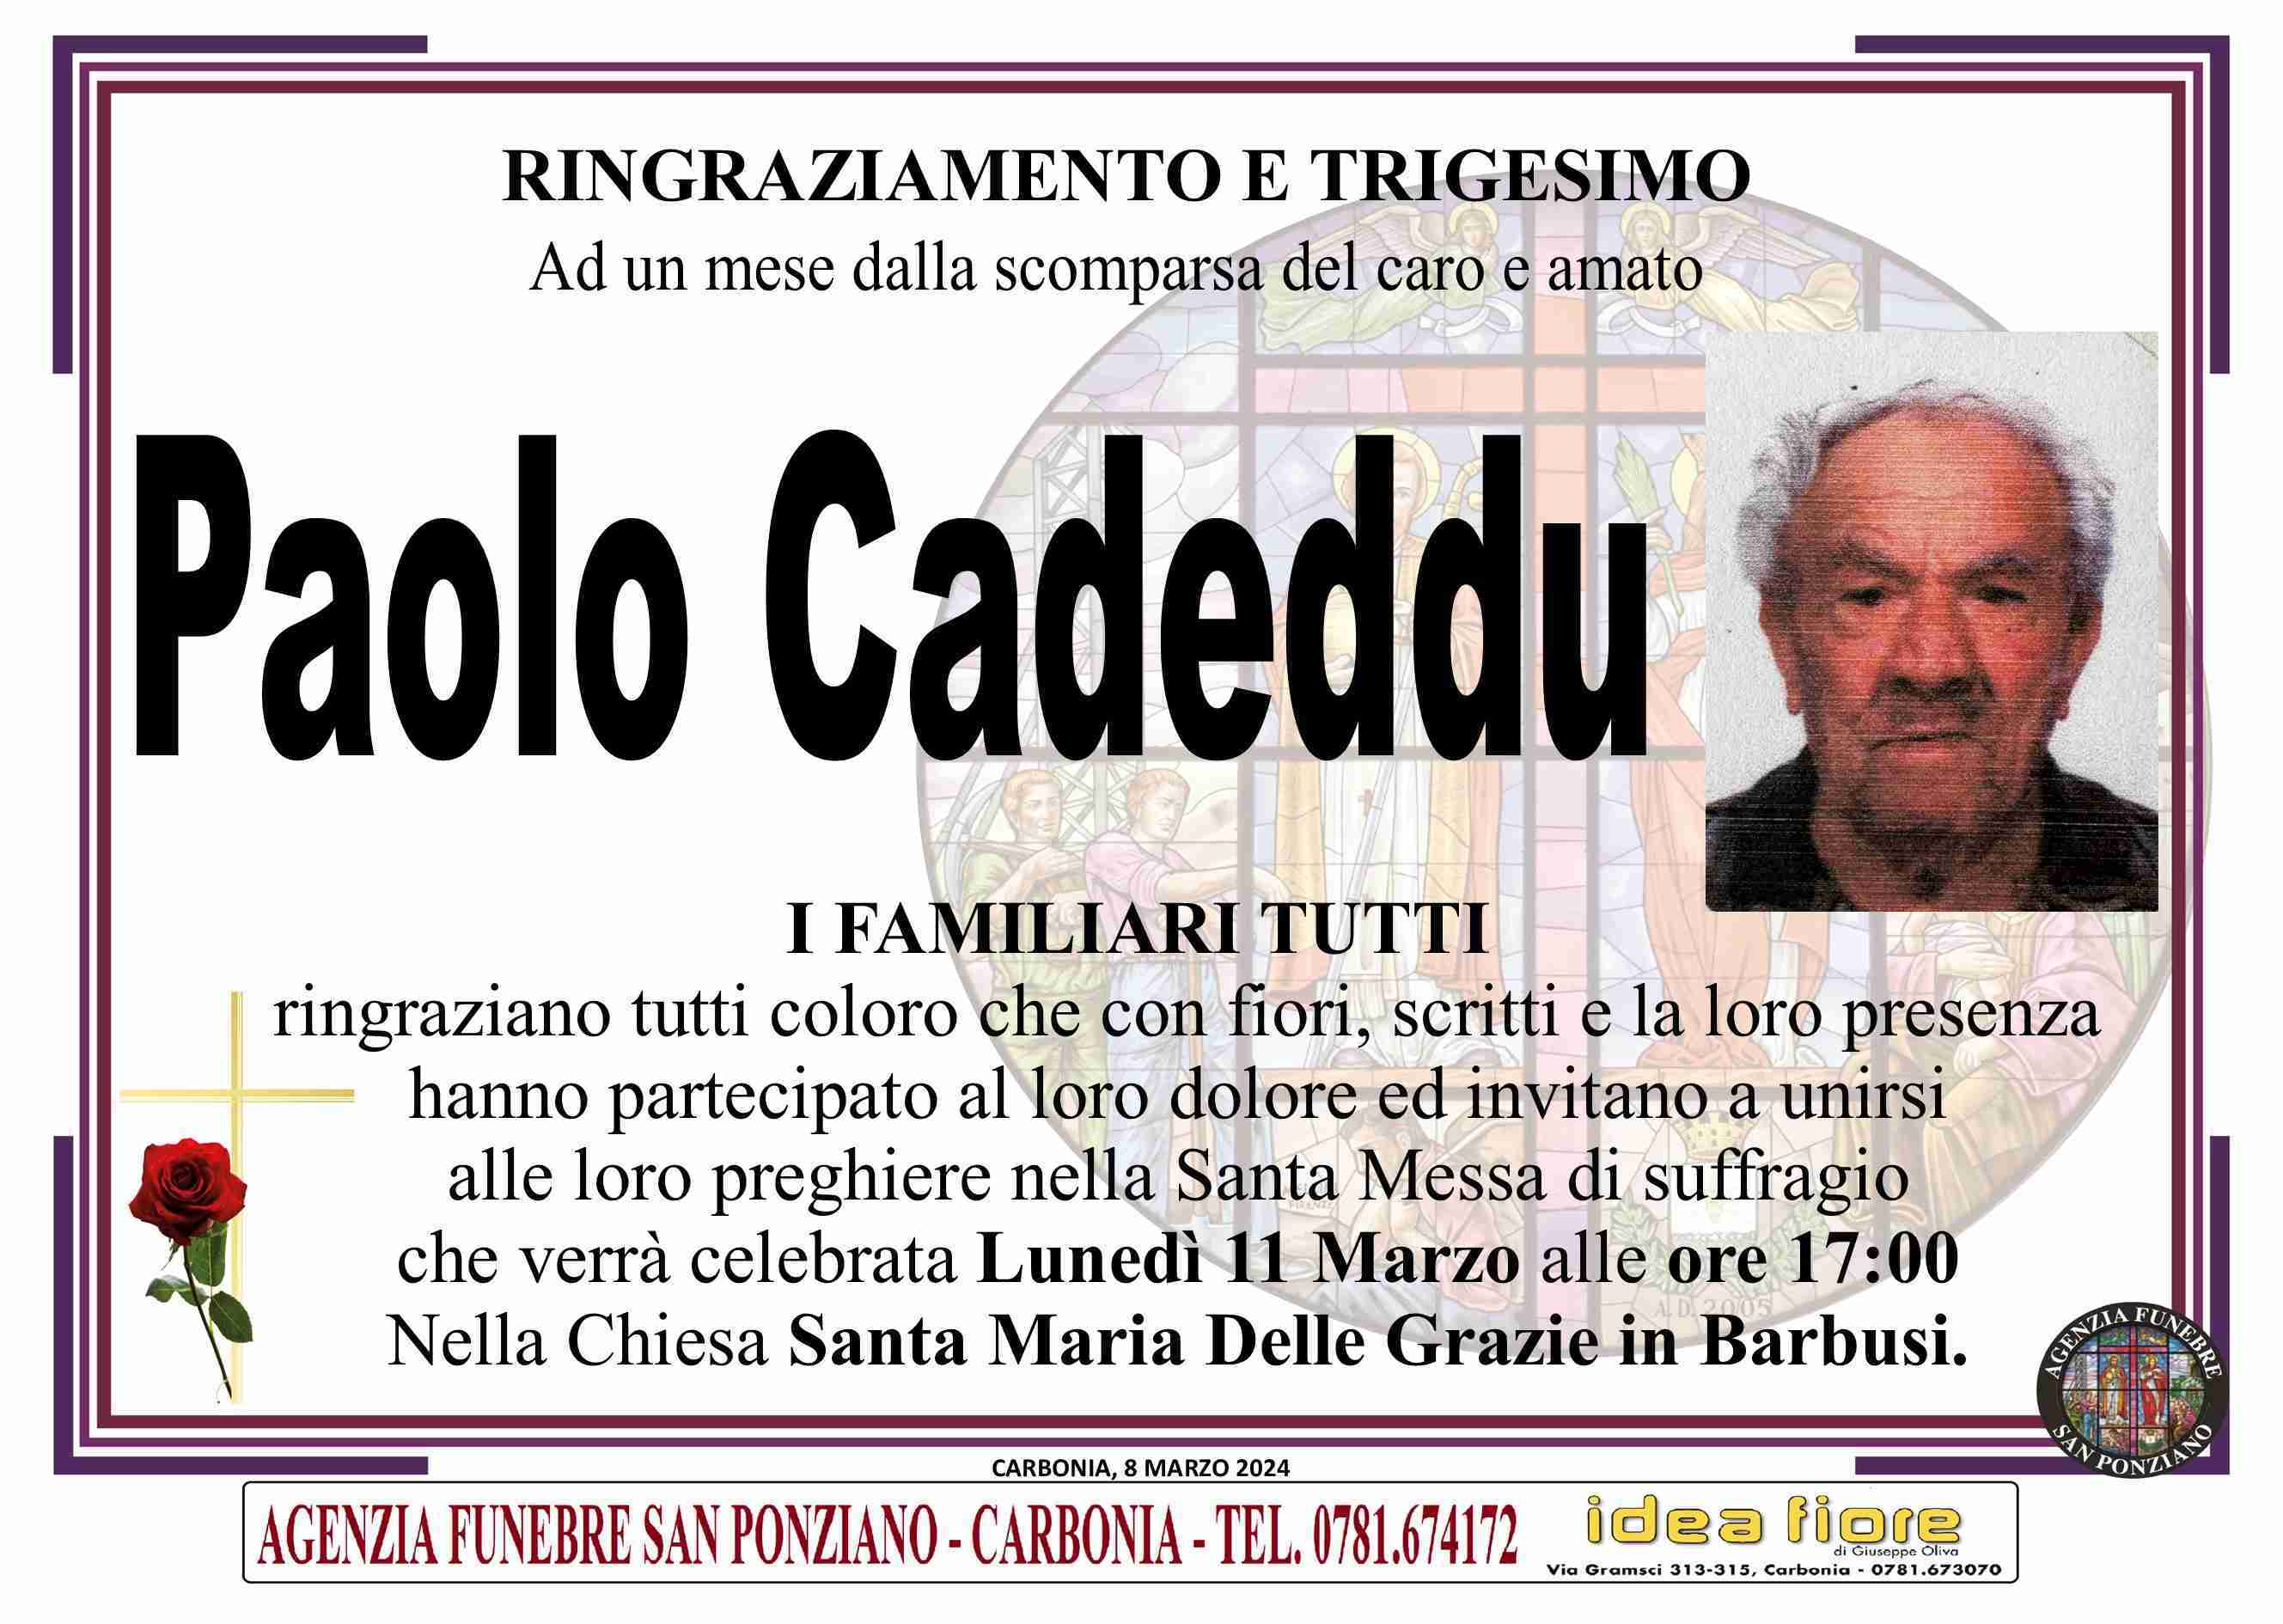 Paolo Cadeddu